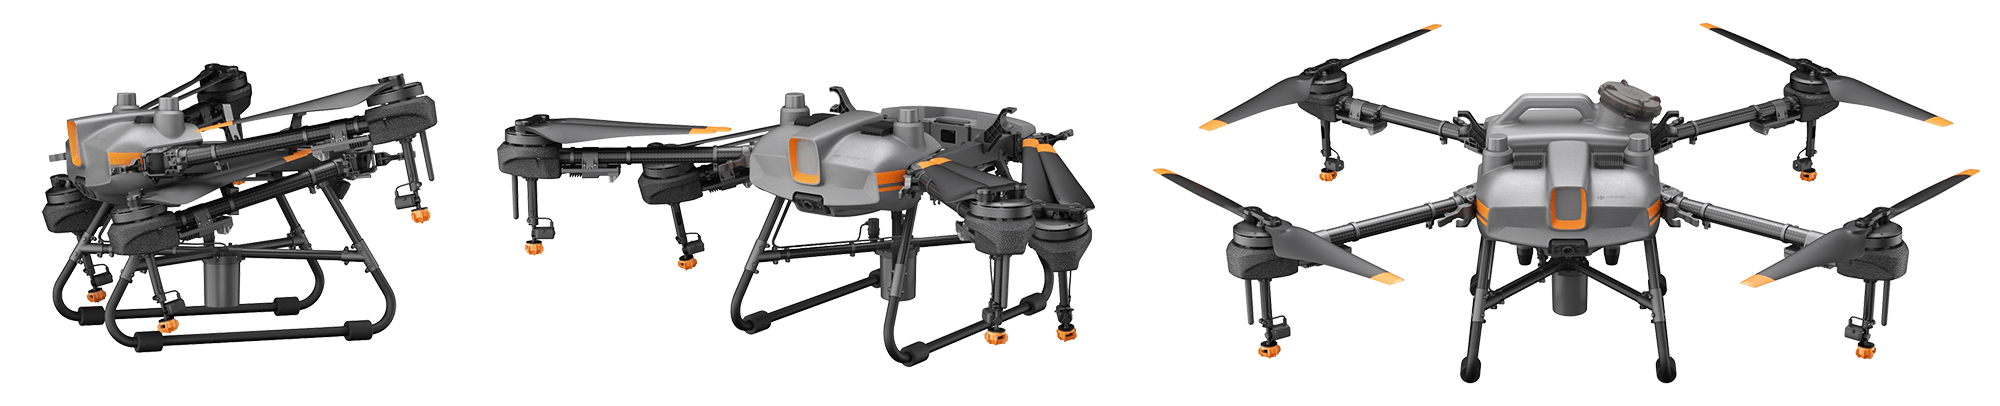 Dron dla rolnictwa DJI Agras T10